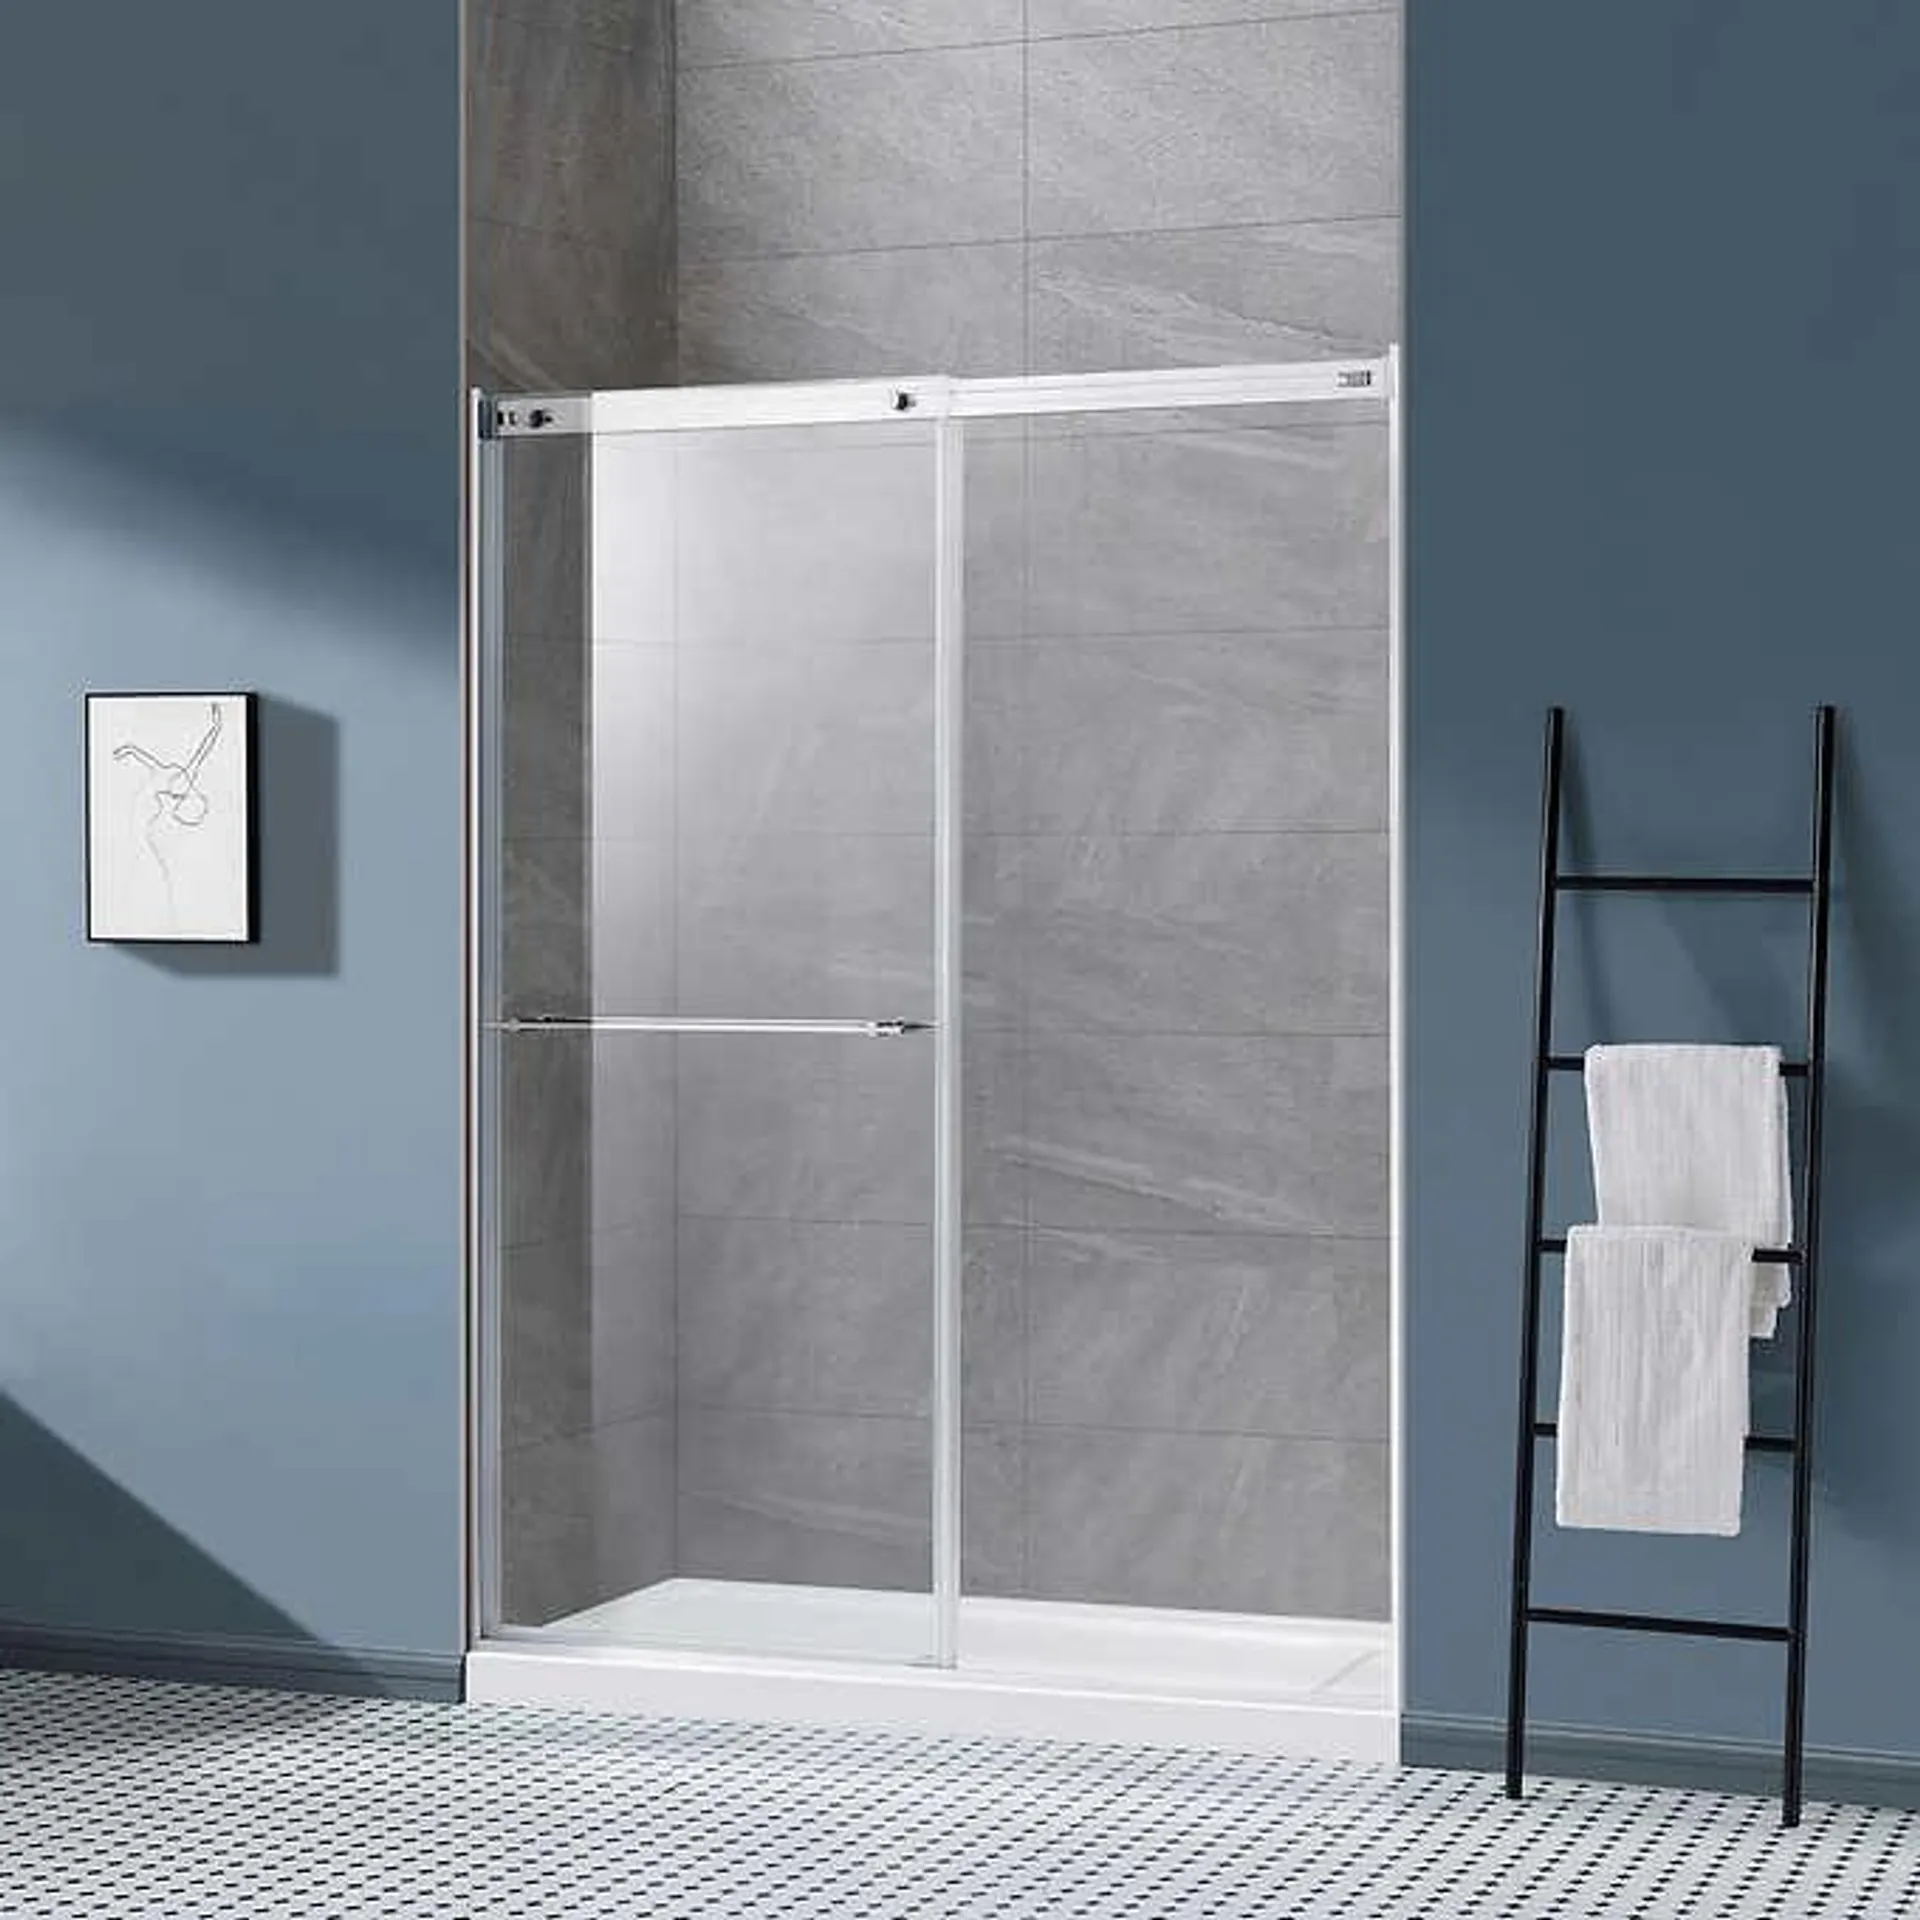 OVE Ivy 60 in. Framed Sliding Shower Door